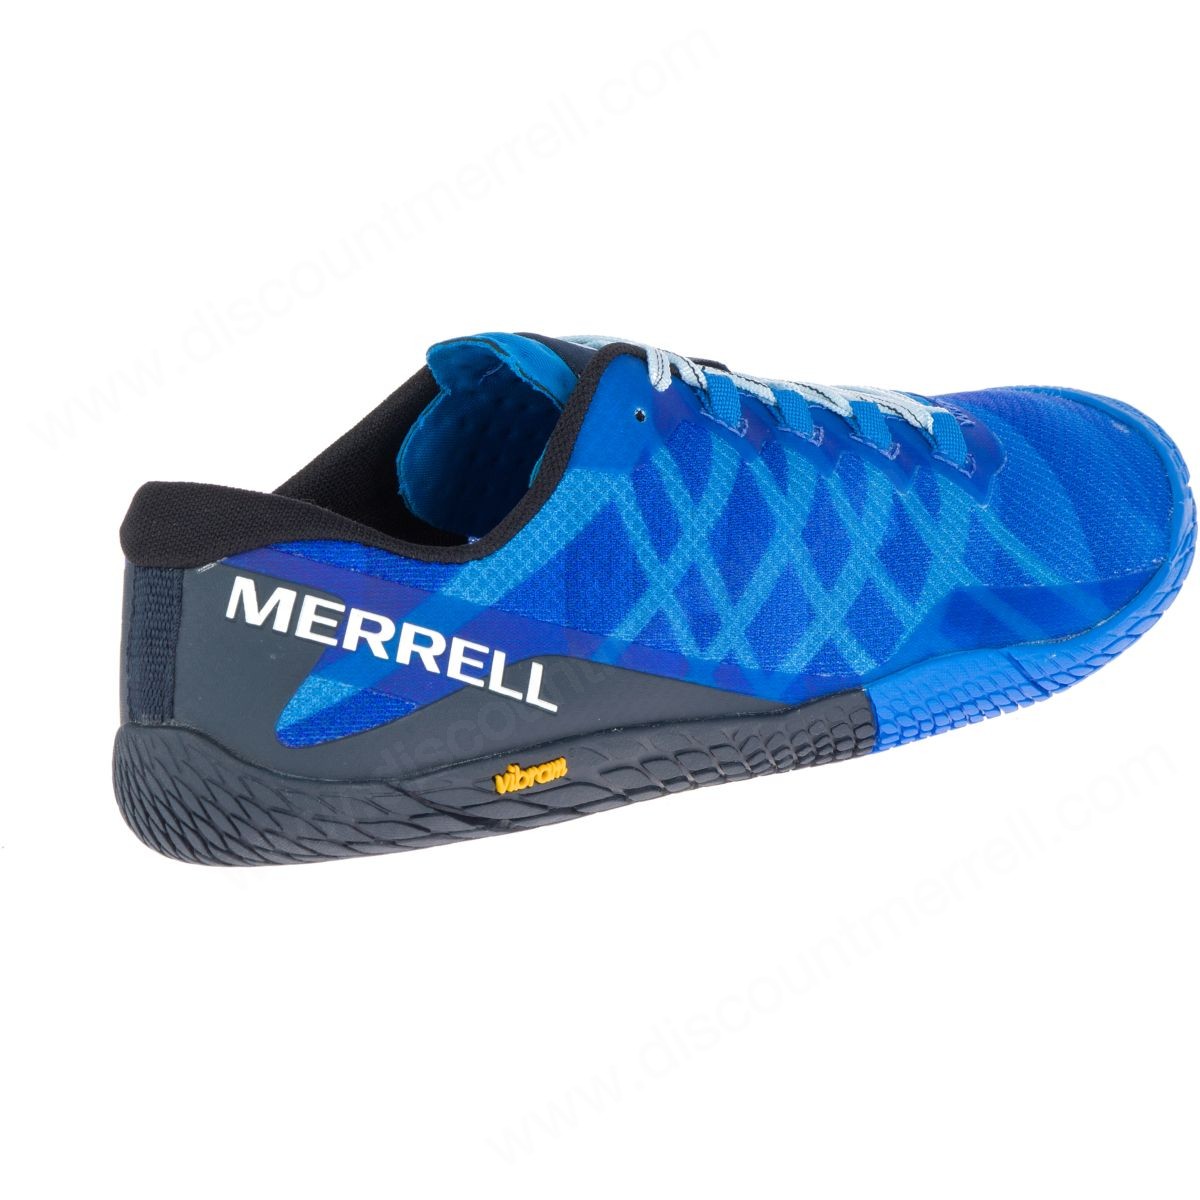 Merrell Mens's Vapor Glove Directoire Blue - -7